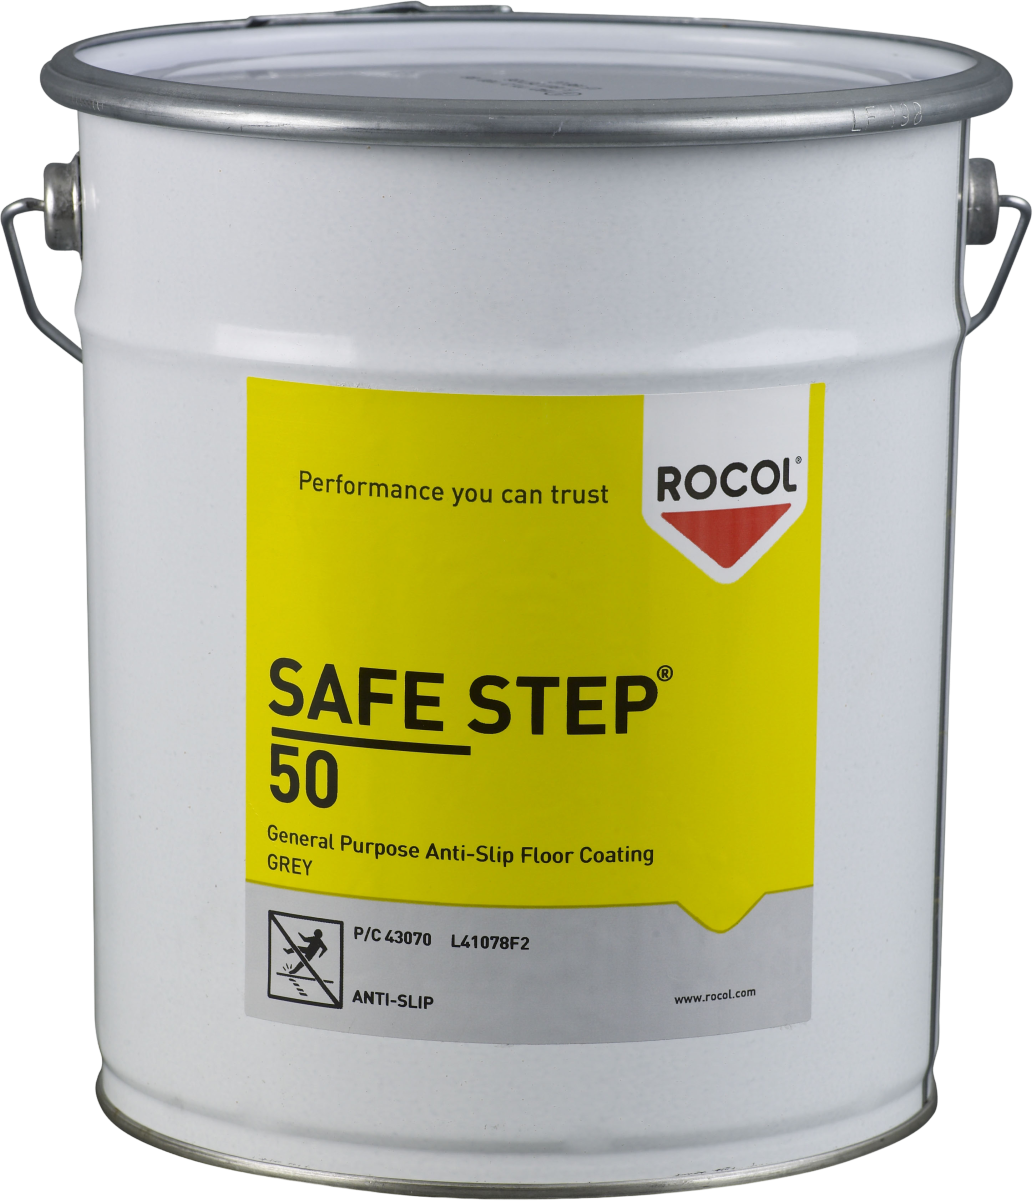 RC43070-5 SAFE STEP® 50 is een antislipvloercoating voor algemeen gebruik, aanbevolen voor grote ruimtes waar een laag profiel antislipoppervlak vereist is.